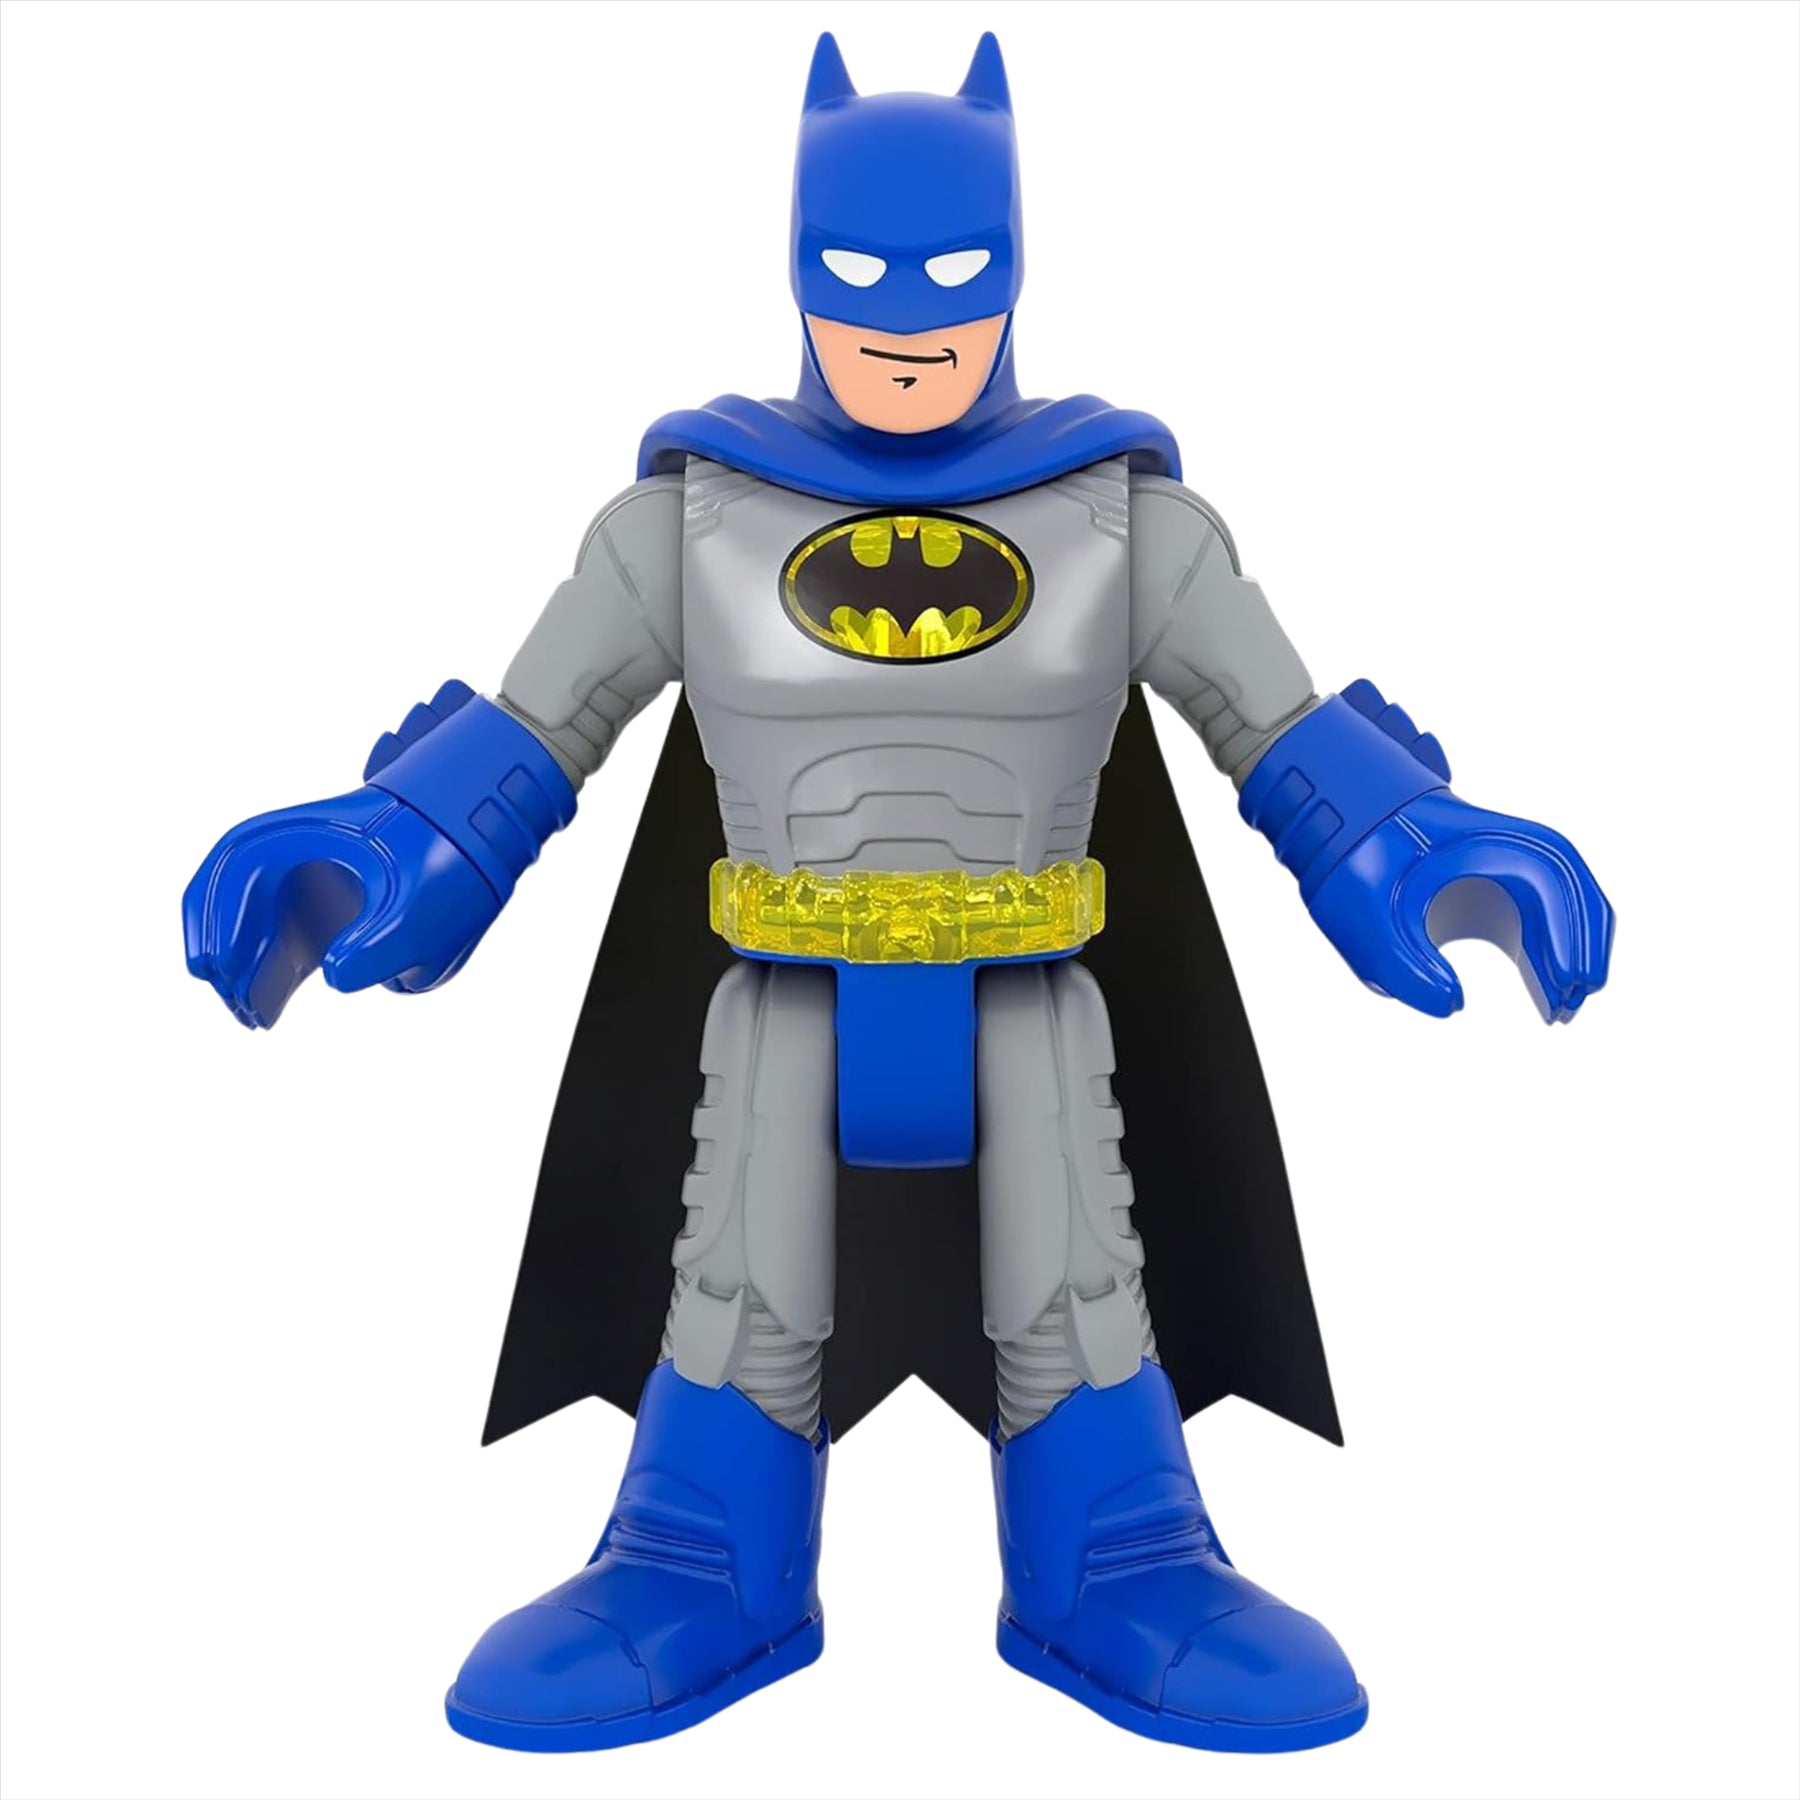 Imaginext DC Super Friends Batman Miniature Action Figure Play Toy - Toptoys2u